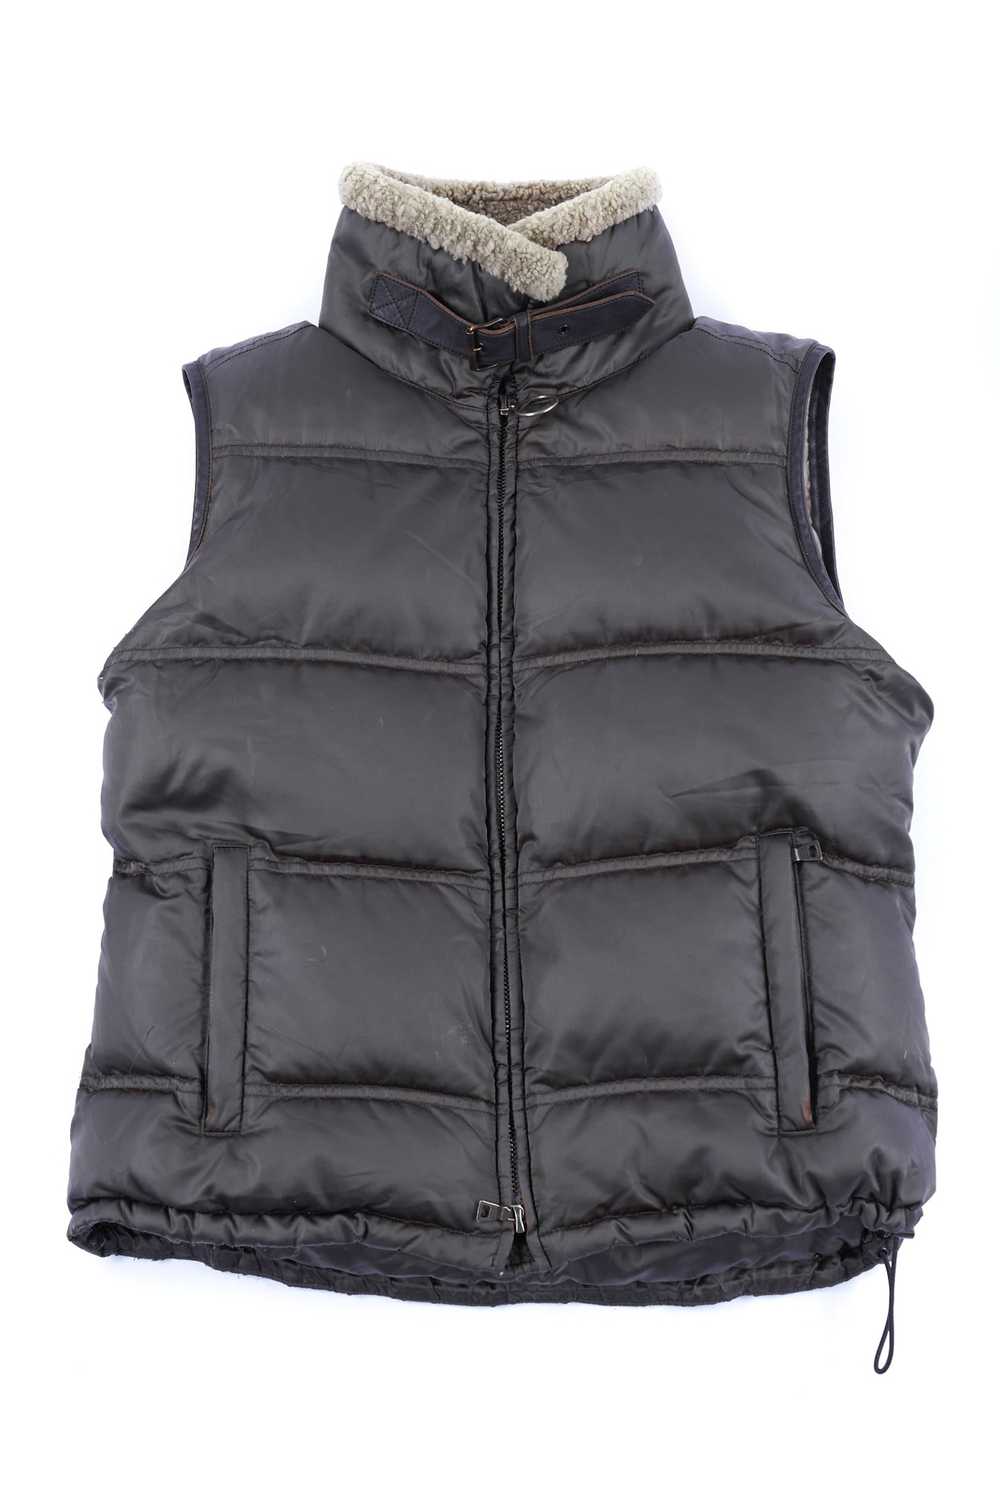 Prada VTG PRADA DOWN Vest Nylon Size 44 Olive Gre… - image 4